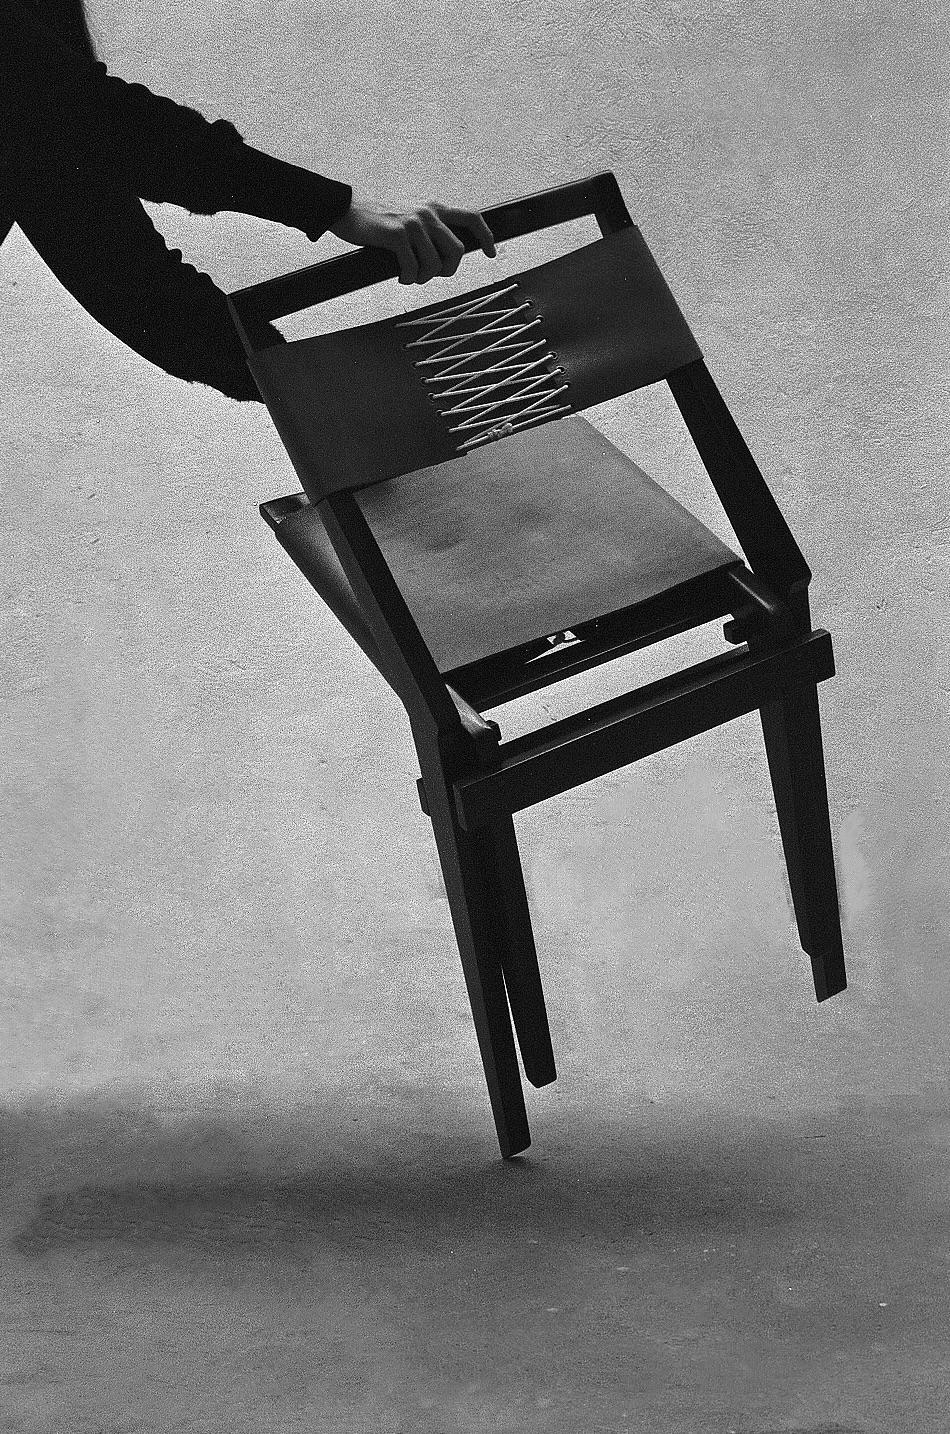 Cette chaise exceptionnelle porte la marque de l'ingéniosité de Lina Bo Bardi, conçue spécifiquement pour l'auditorium du MASP lors de son inauguration le 7 avril dernier. En 1947, Lina a constaté l'absence d'une chaise moderne appropriée dans les